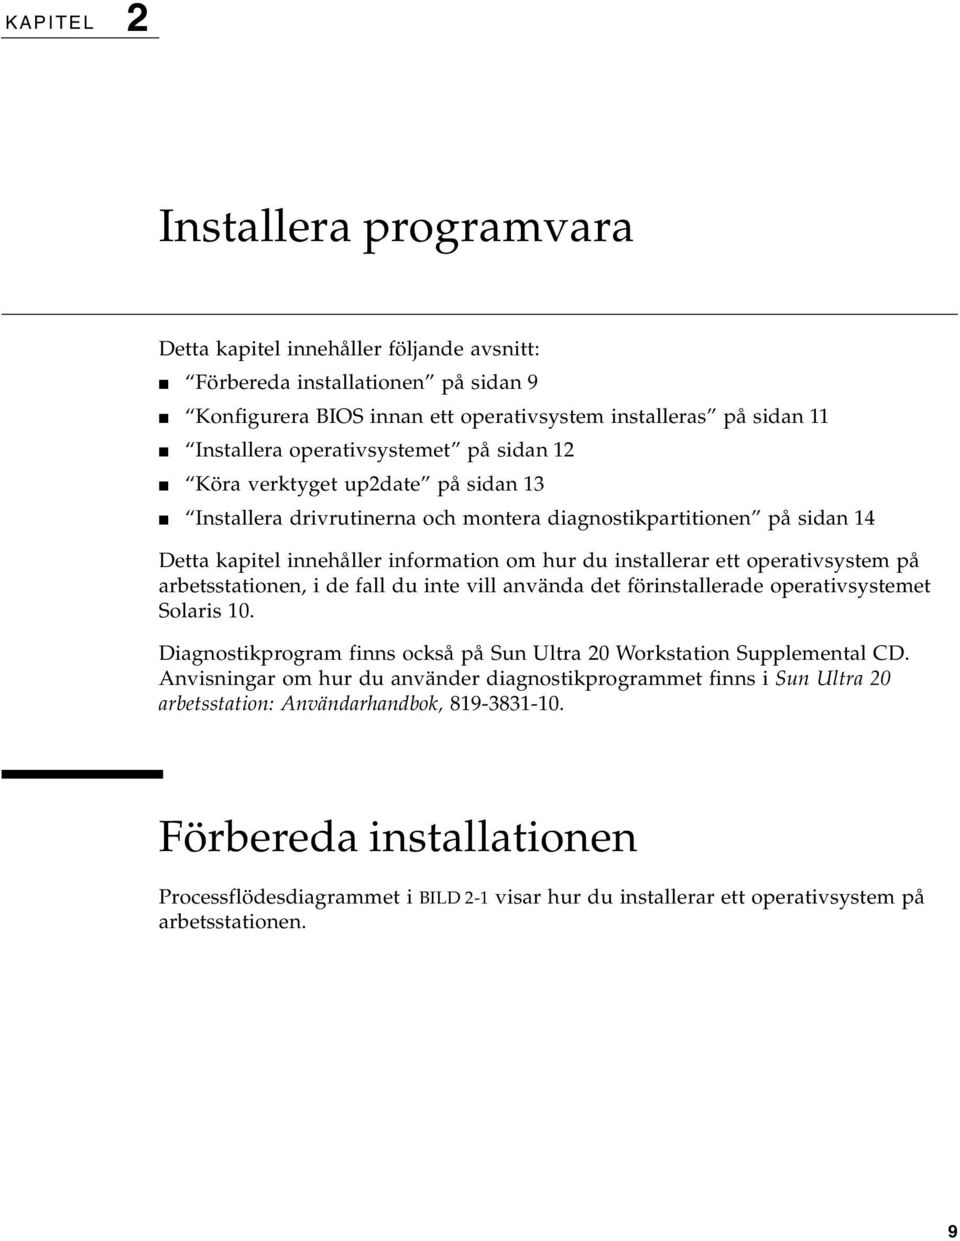 operativsystem på arbetsstationen, i de fall du inte vill använda det förinstallerade operativsystemet Solaris 10. Diagnostikprogram finns också på Sun Ultra 20 Workstation Supplemental CD.